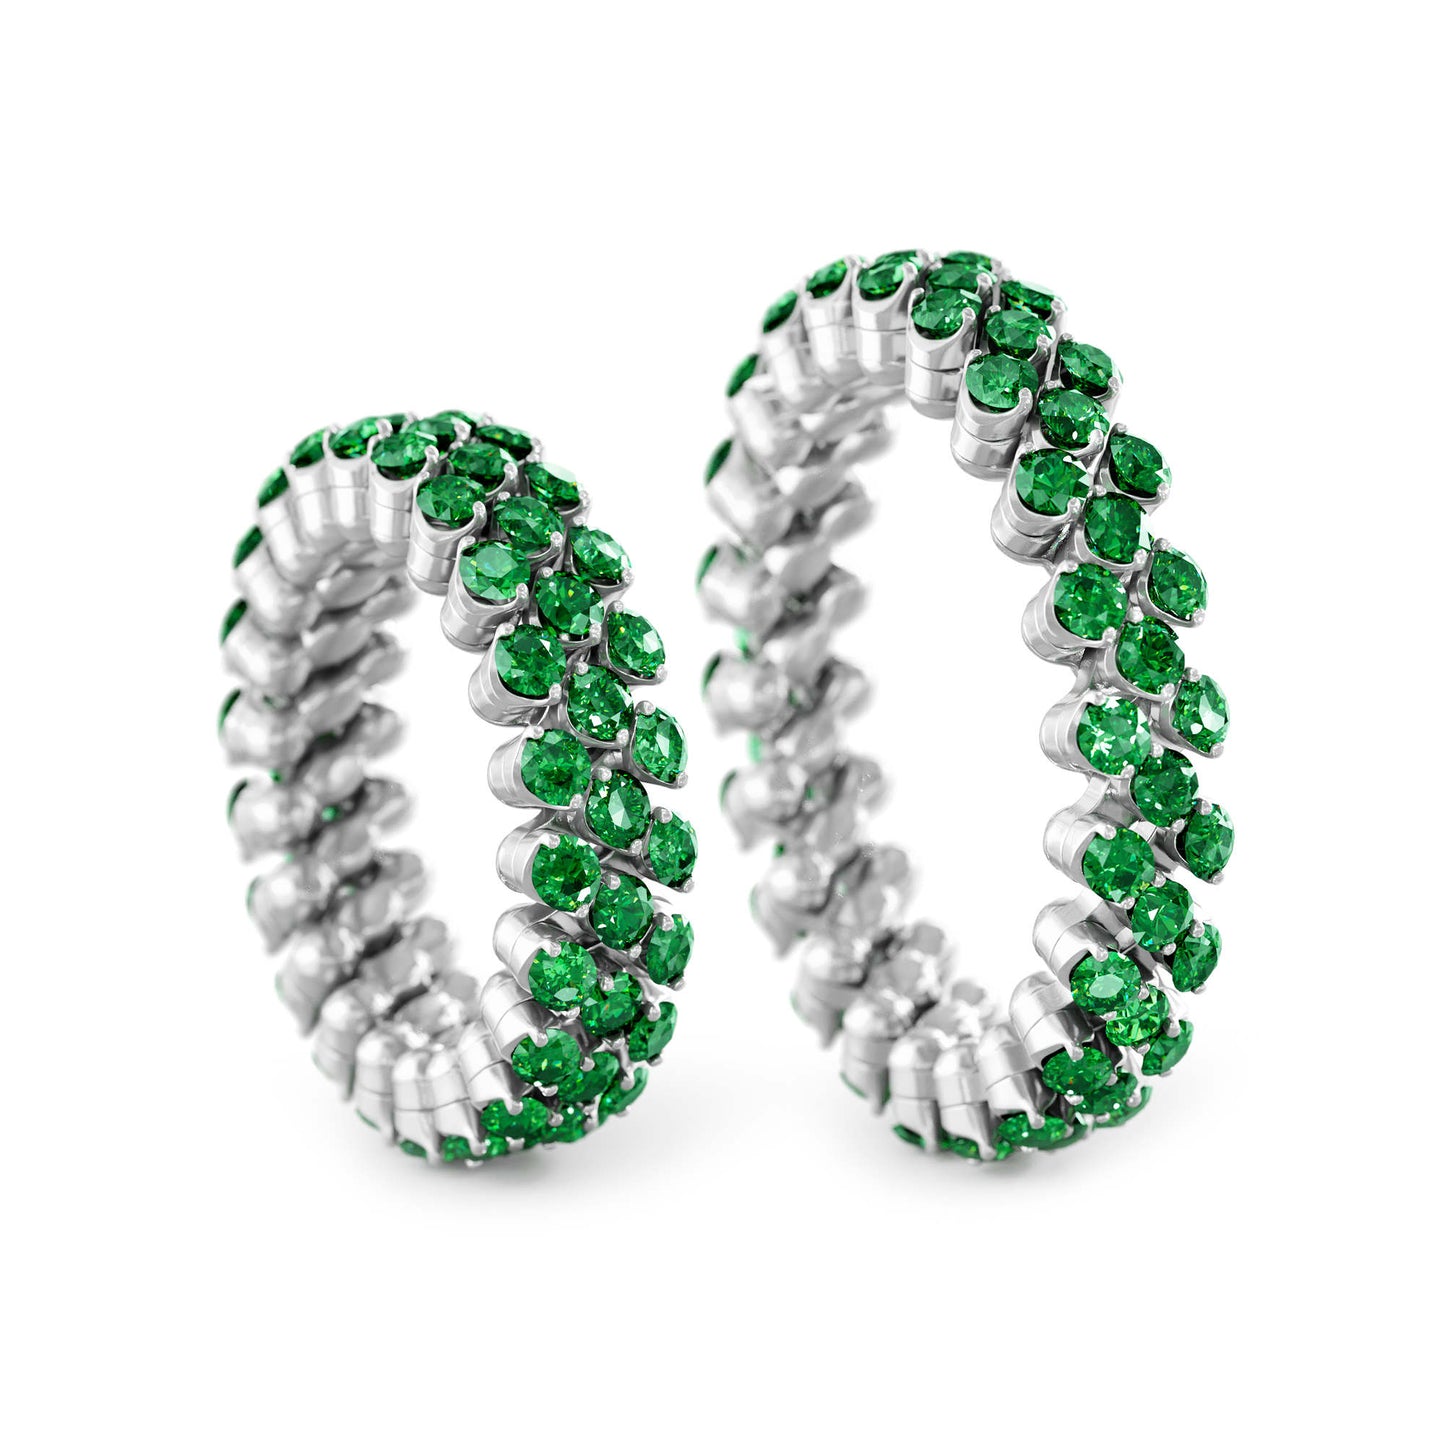 Brevetto Multi-Size Ring von Serafino Consoli online kaufen (Ref. RMS 3F2 WG T)